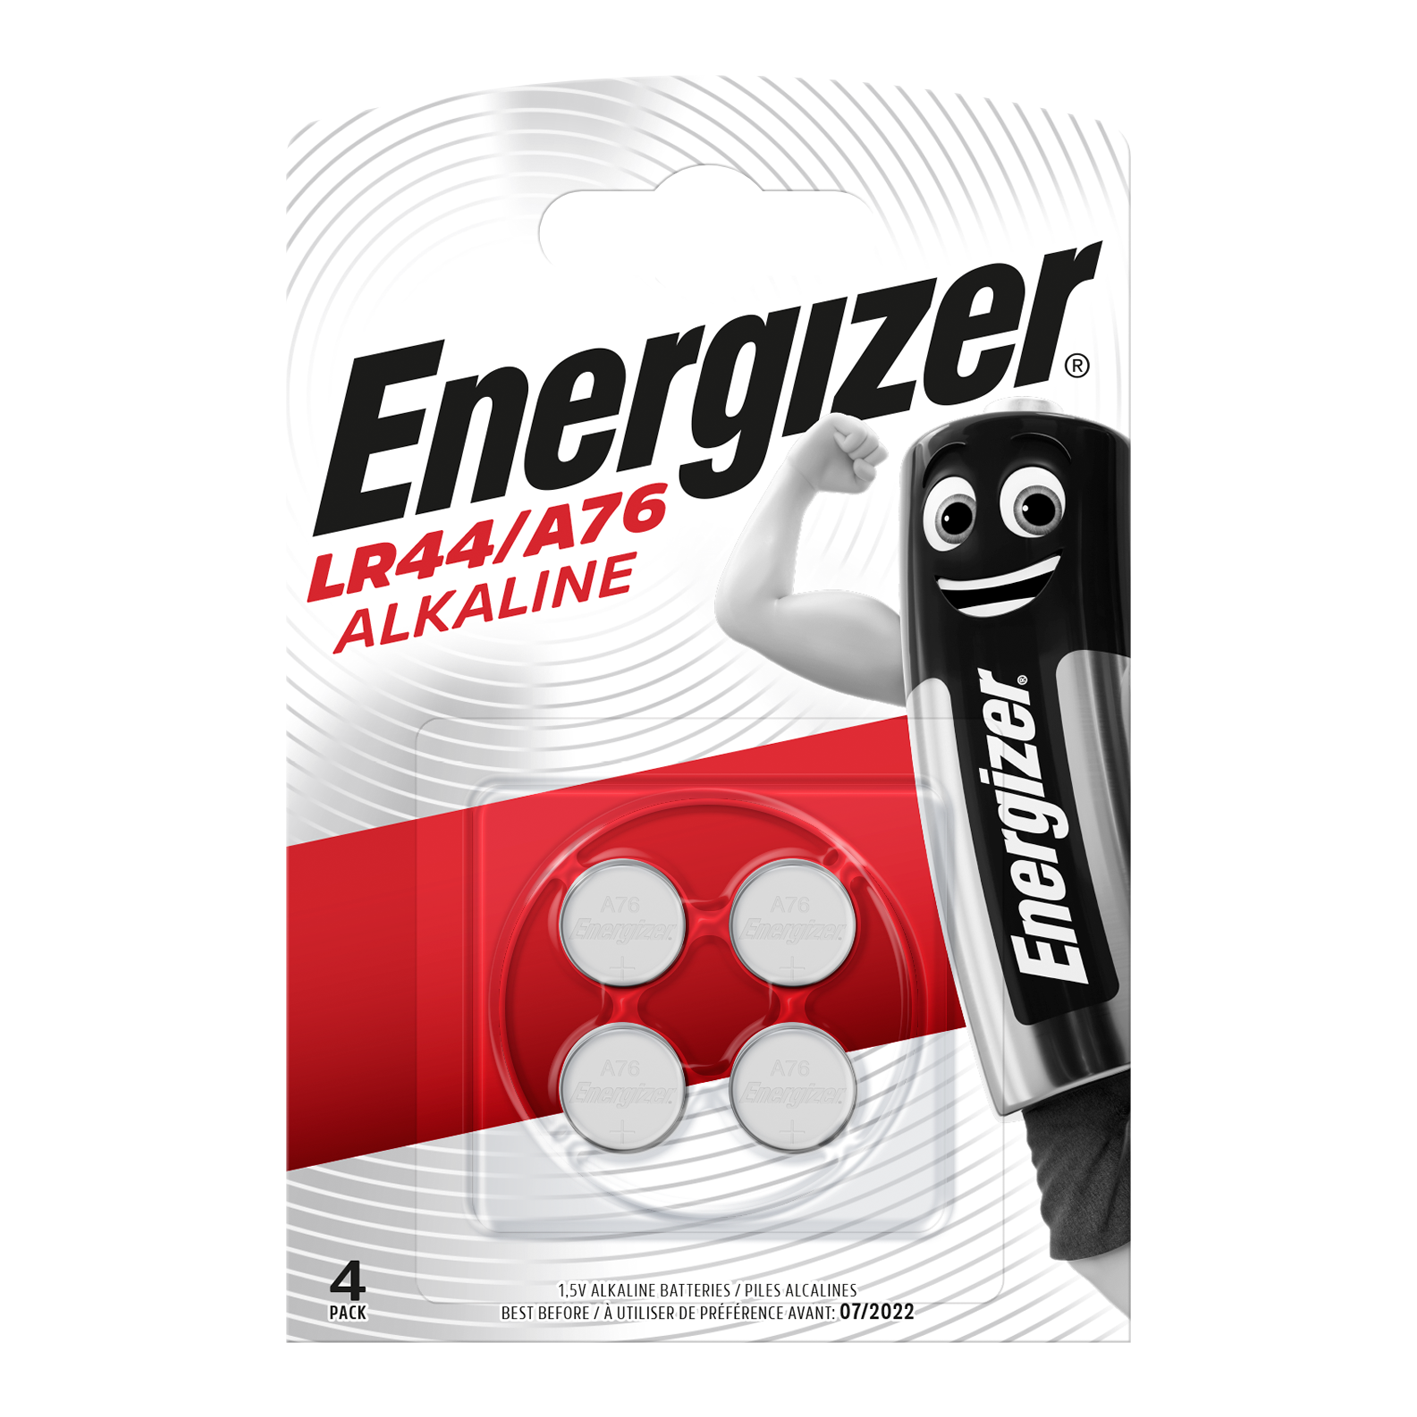 Energizer LR44/A76 pila alcalina tipo botón, paquete de 4